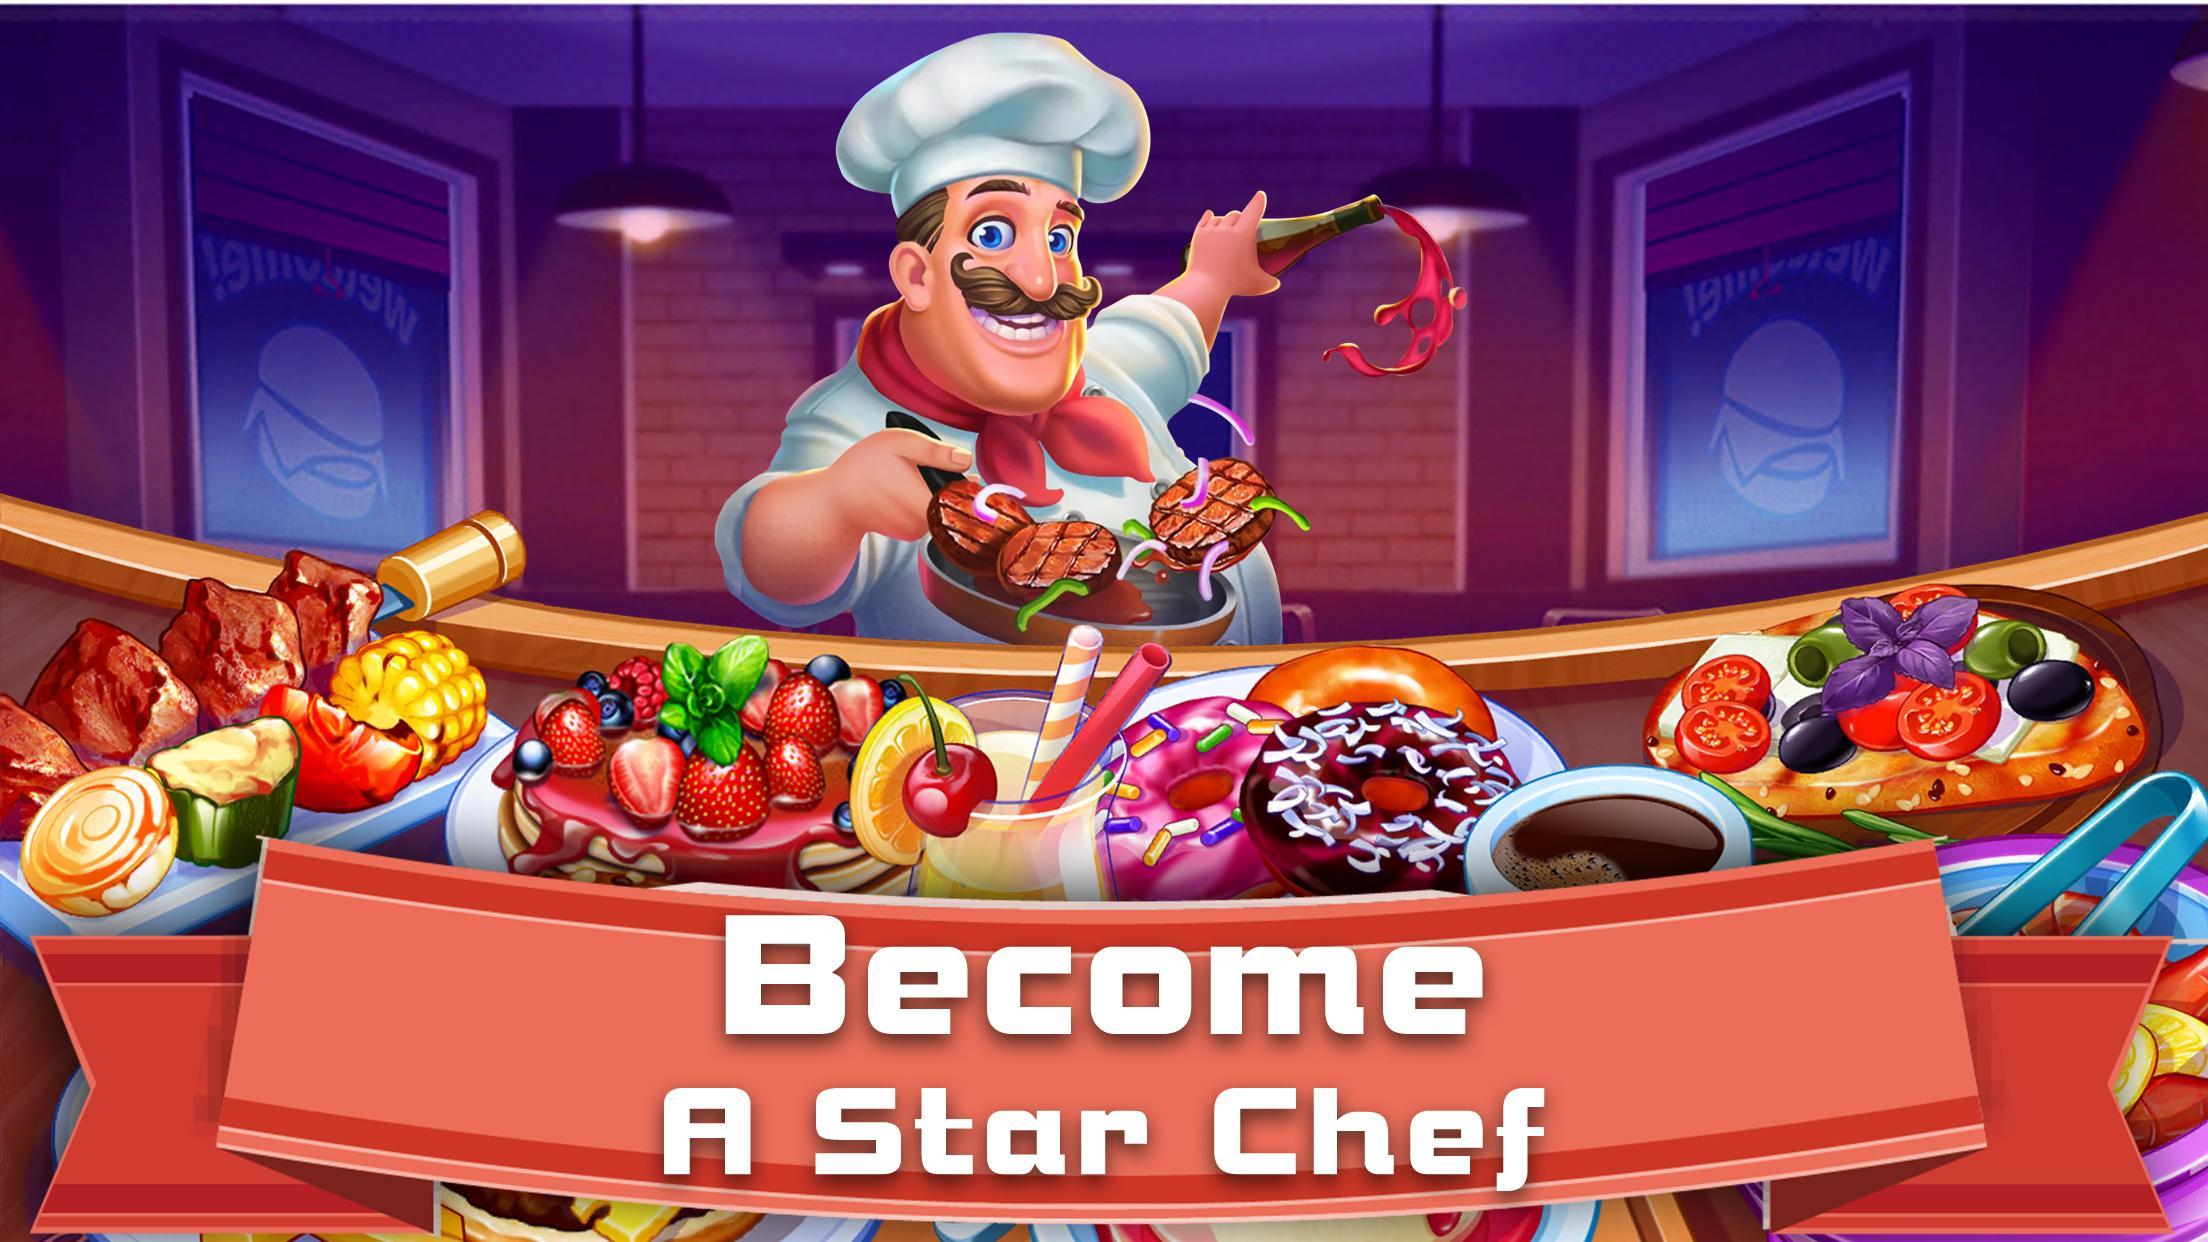 Screenshot 1 of เรื่องราวการทำอาหาร: เกมทำอาหารการบริหารเวลา 1.0.5